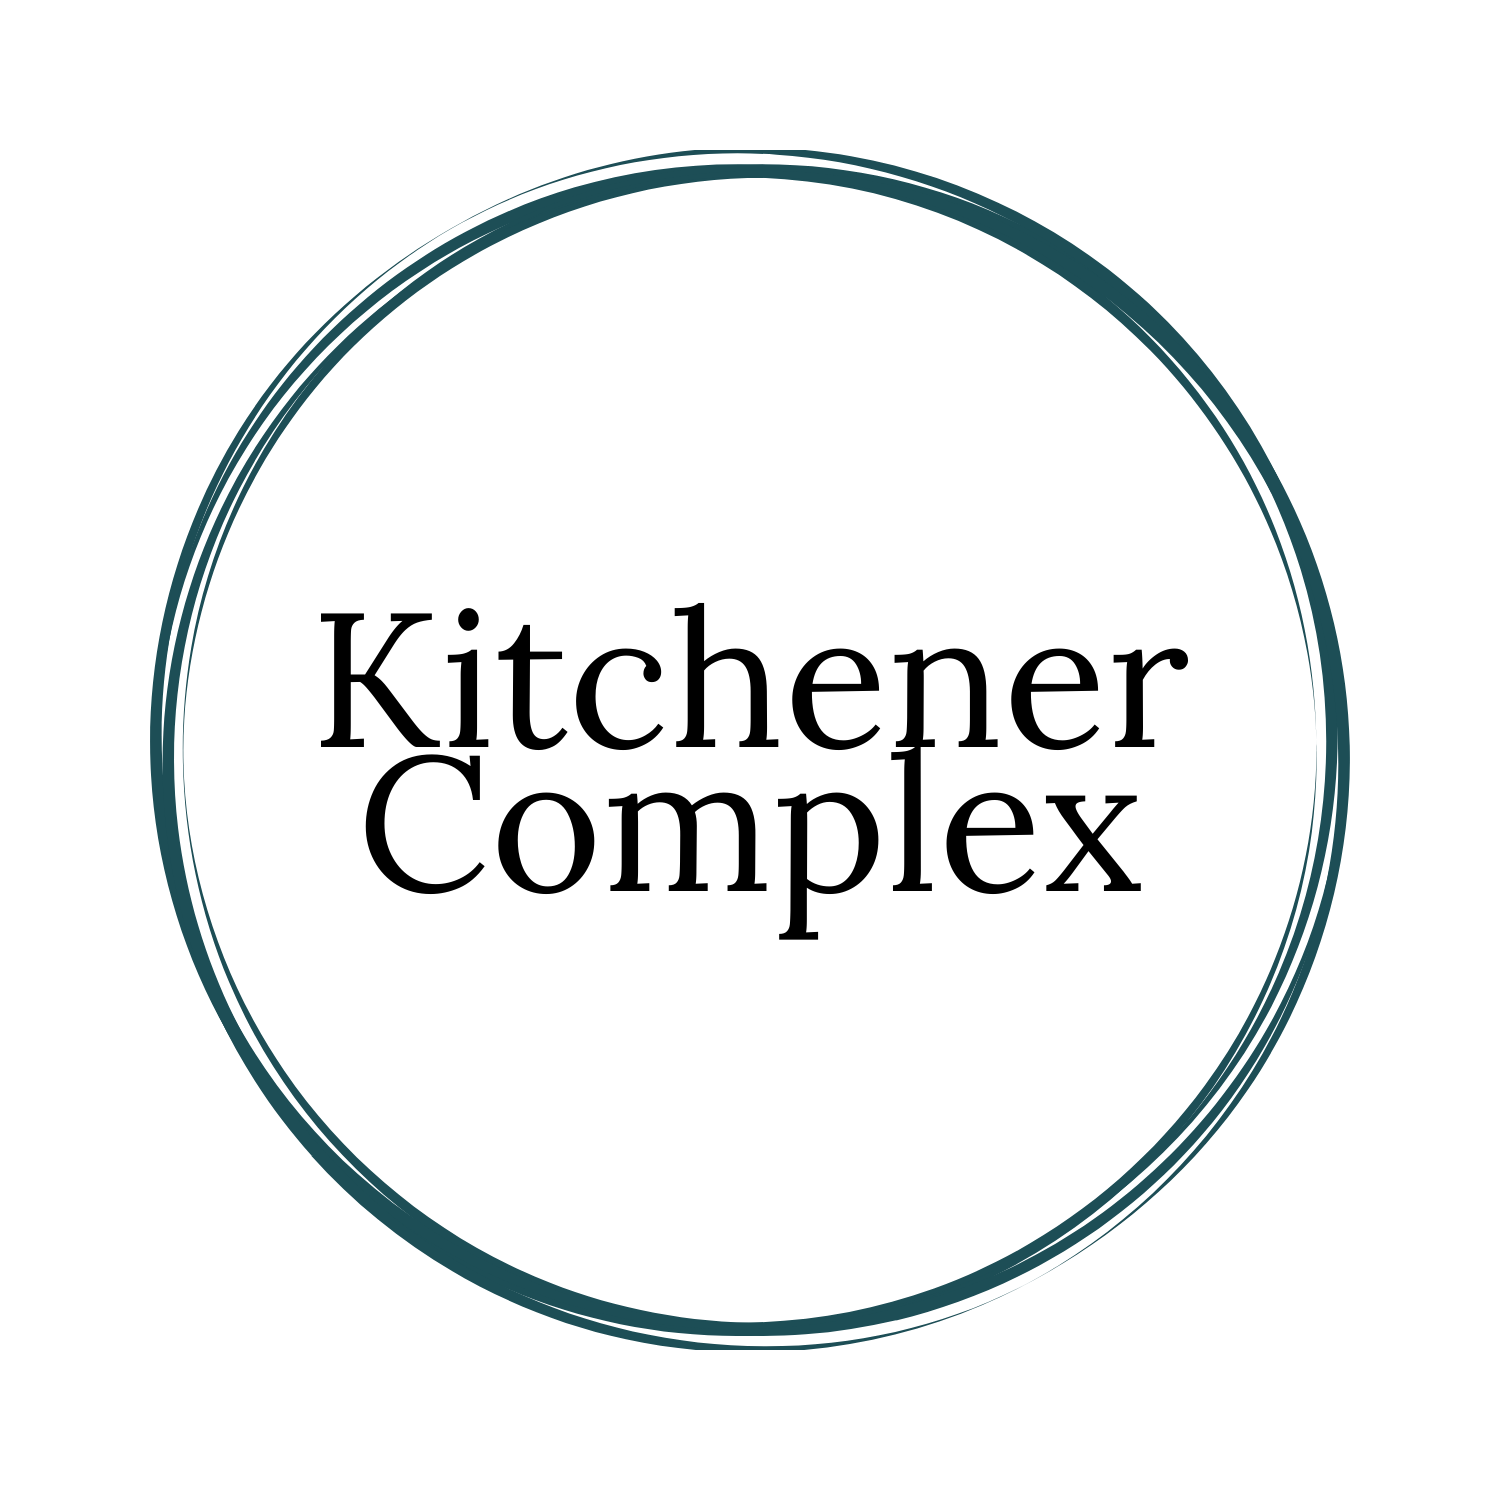 Kitchener Complex